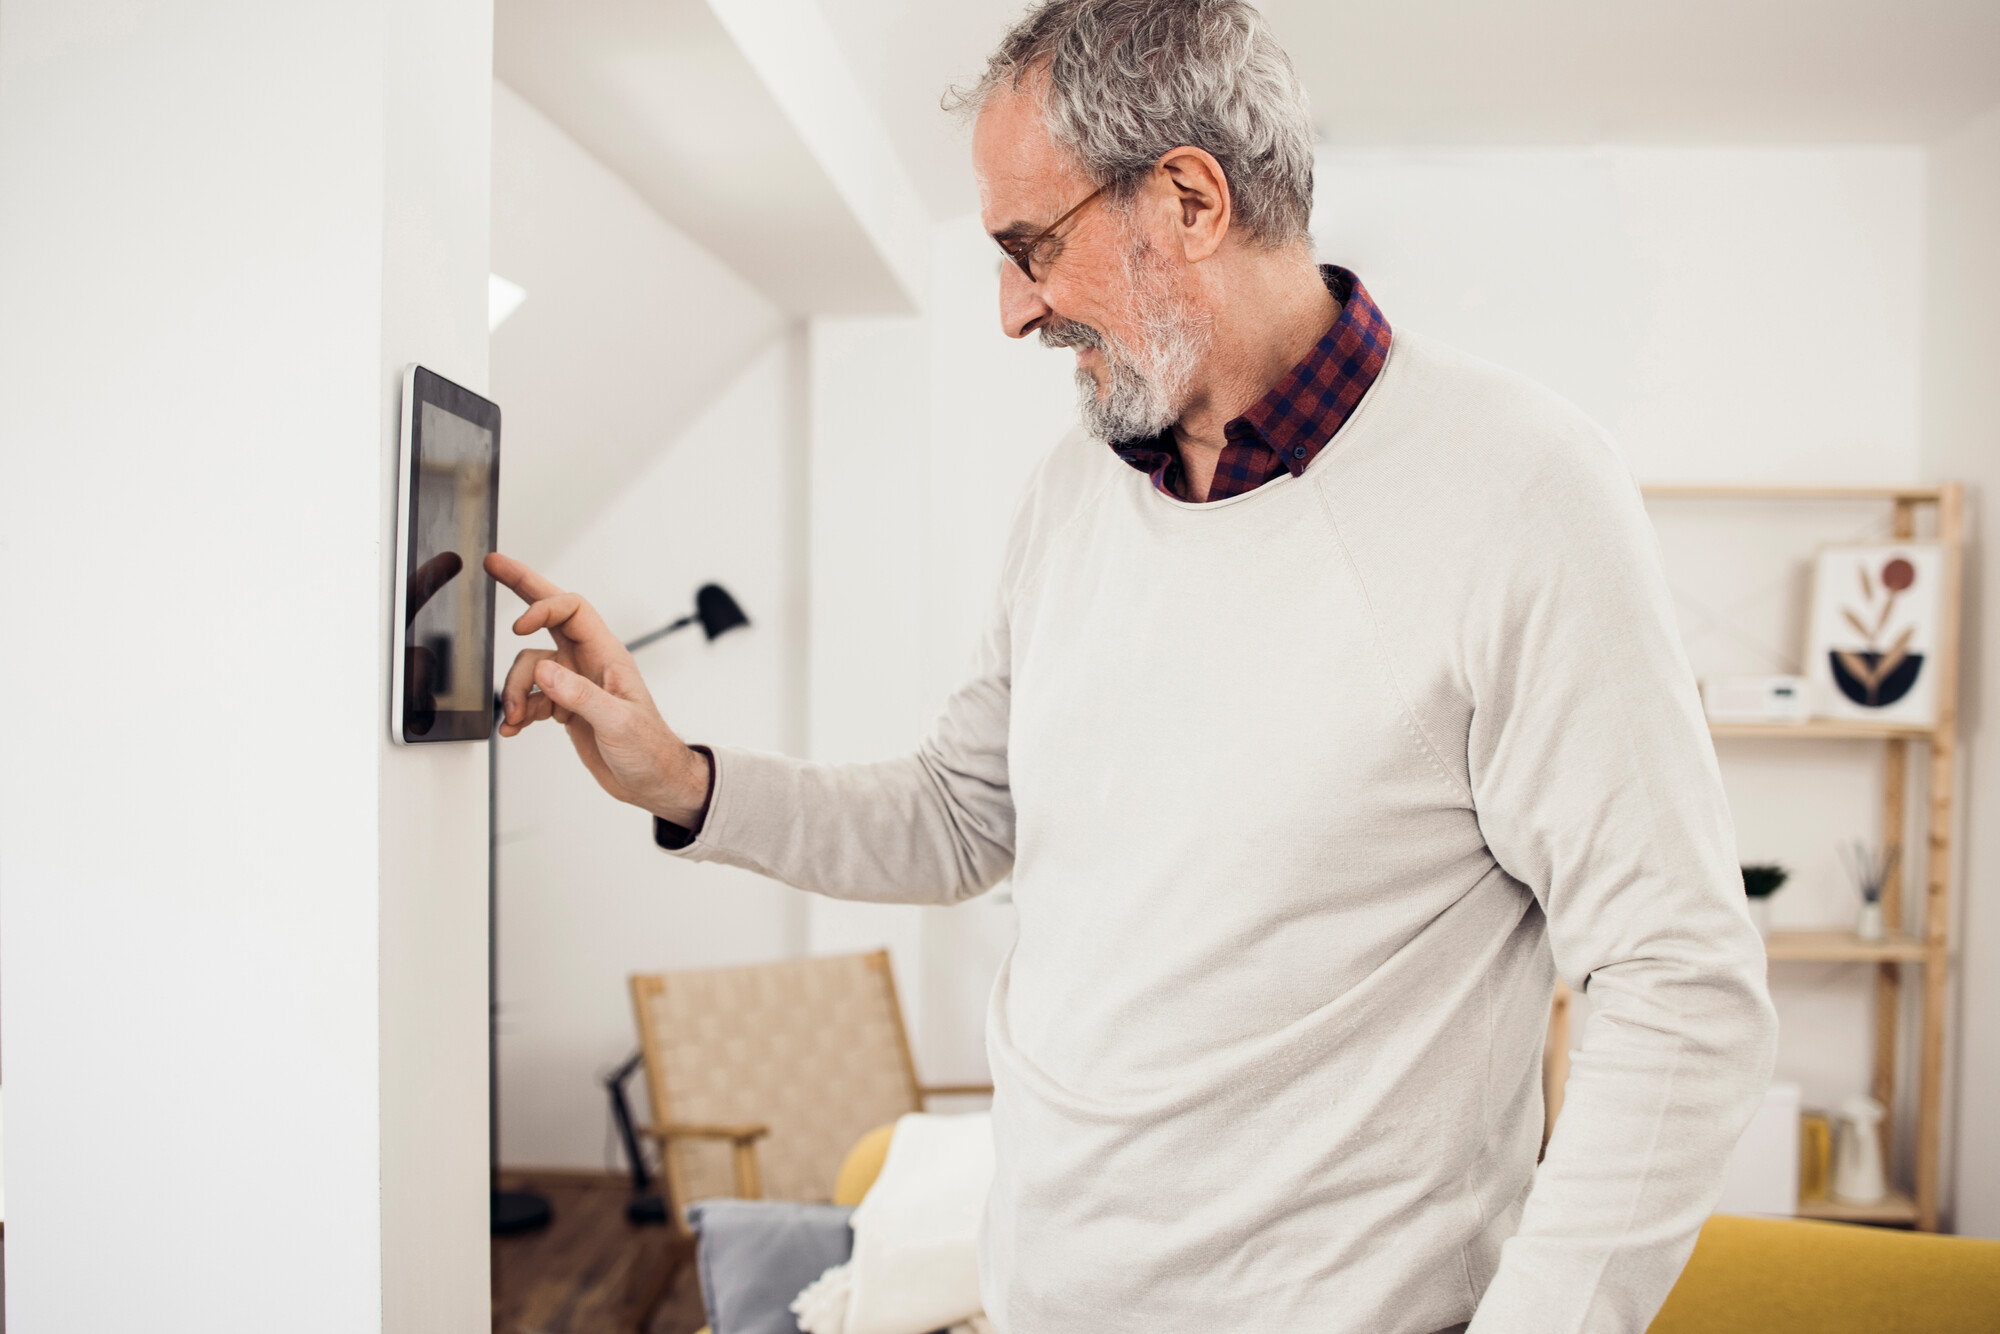 Ältere Menschen möchten oft so lange wie möglich in ihrer vertrauten Umgebung wohnen. Können digitale Anwendungen dabei helfen? Ein Leitfaden informiert über aktuelle Entwicklungen.